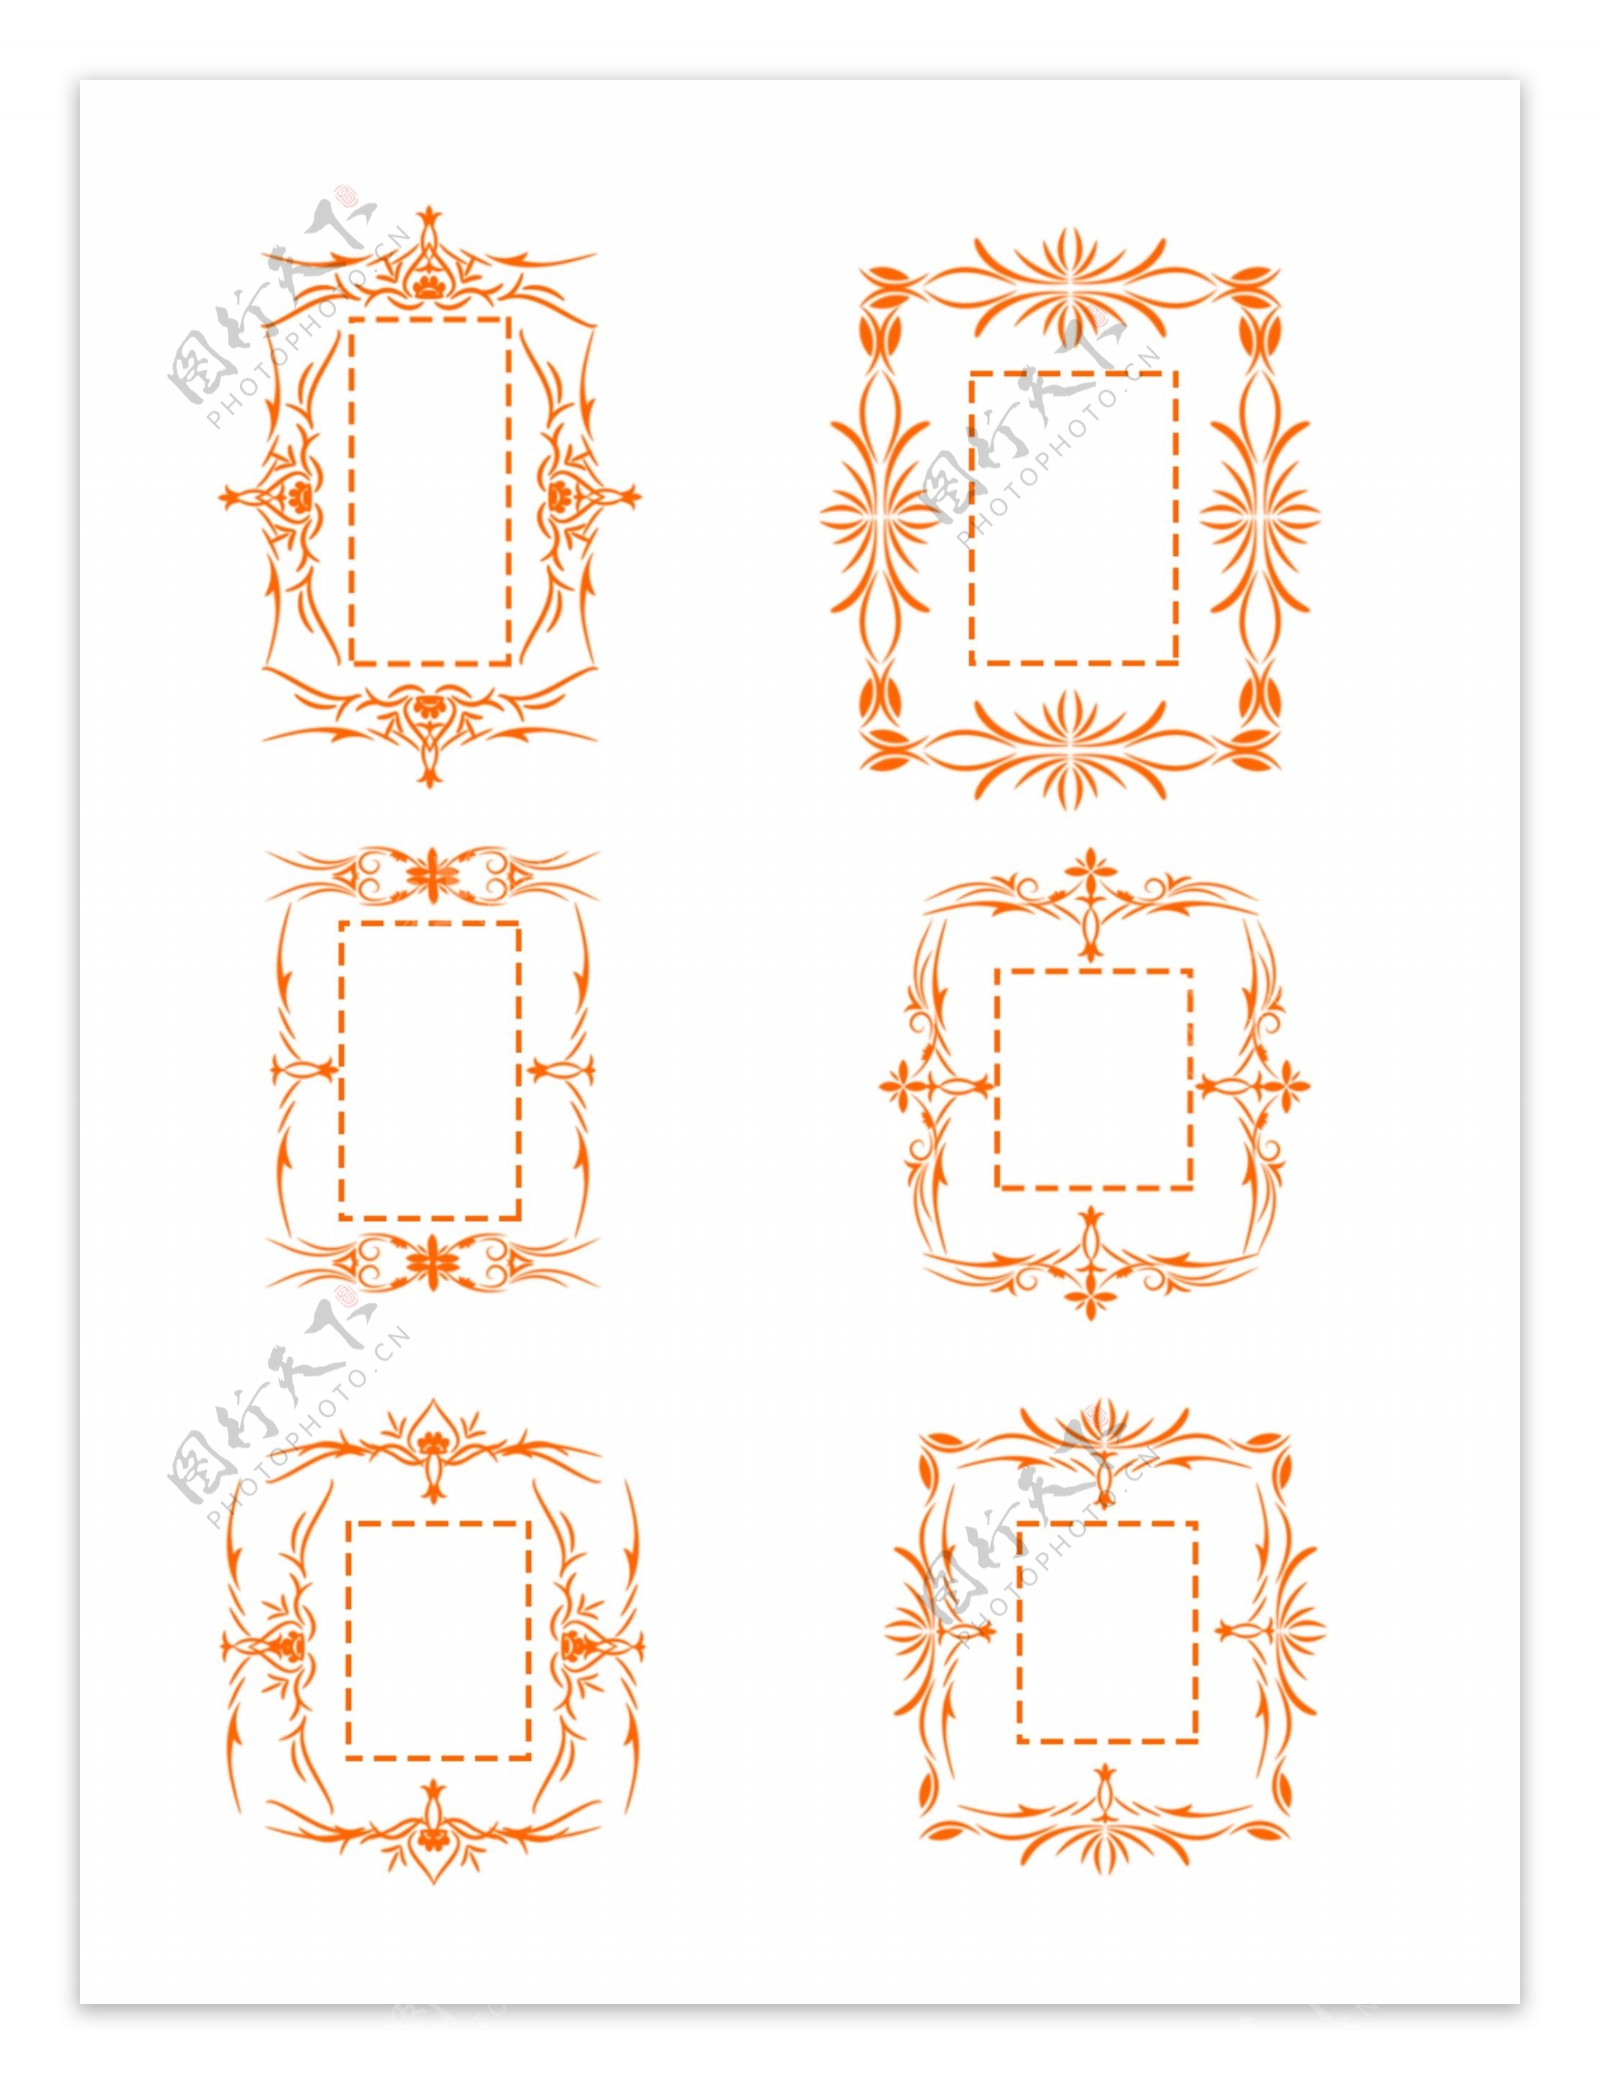 原创欧式复杂边框套图橙色严肃可商用元素